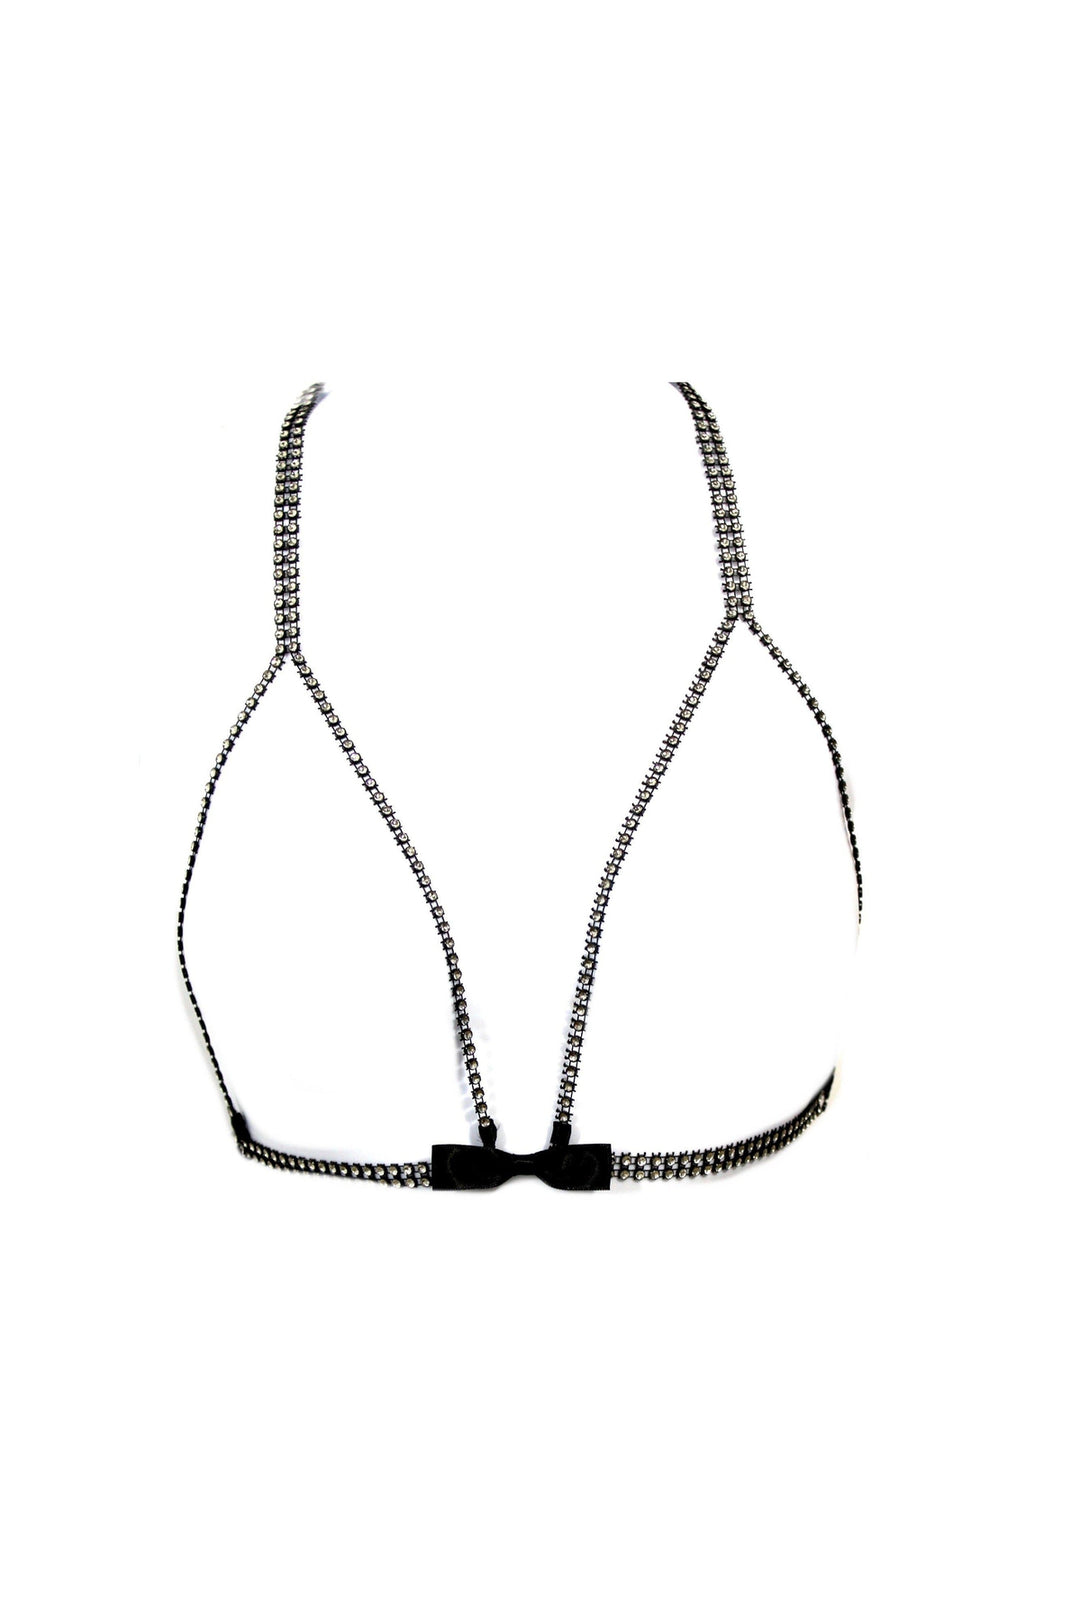 Vixen Bratye-Body Jewelry-Tyes By Tara-Clear-O/S-SEXYSHOES.COM